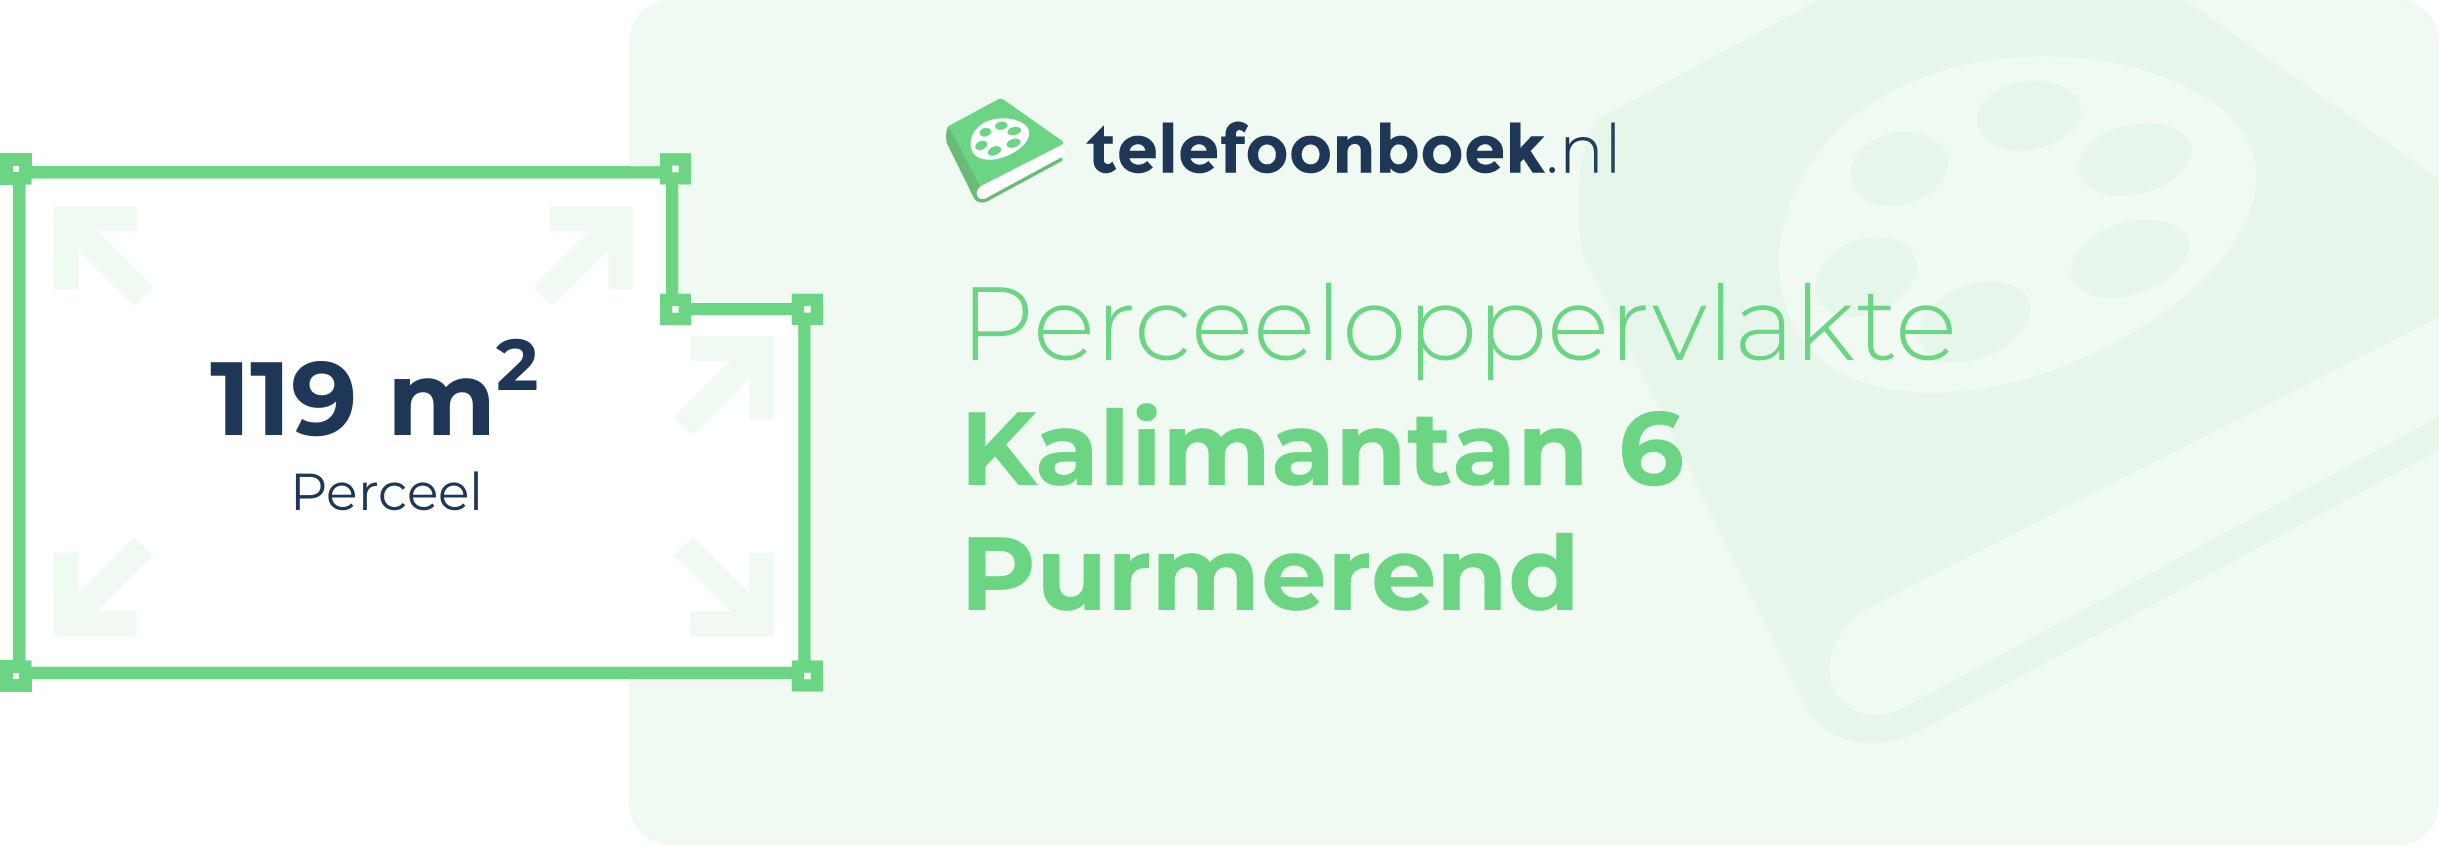 Perceeloppervlakte Kalimantan 6 Purmerend